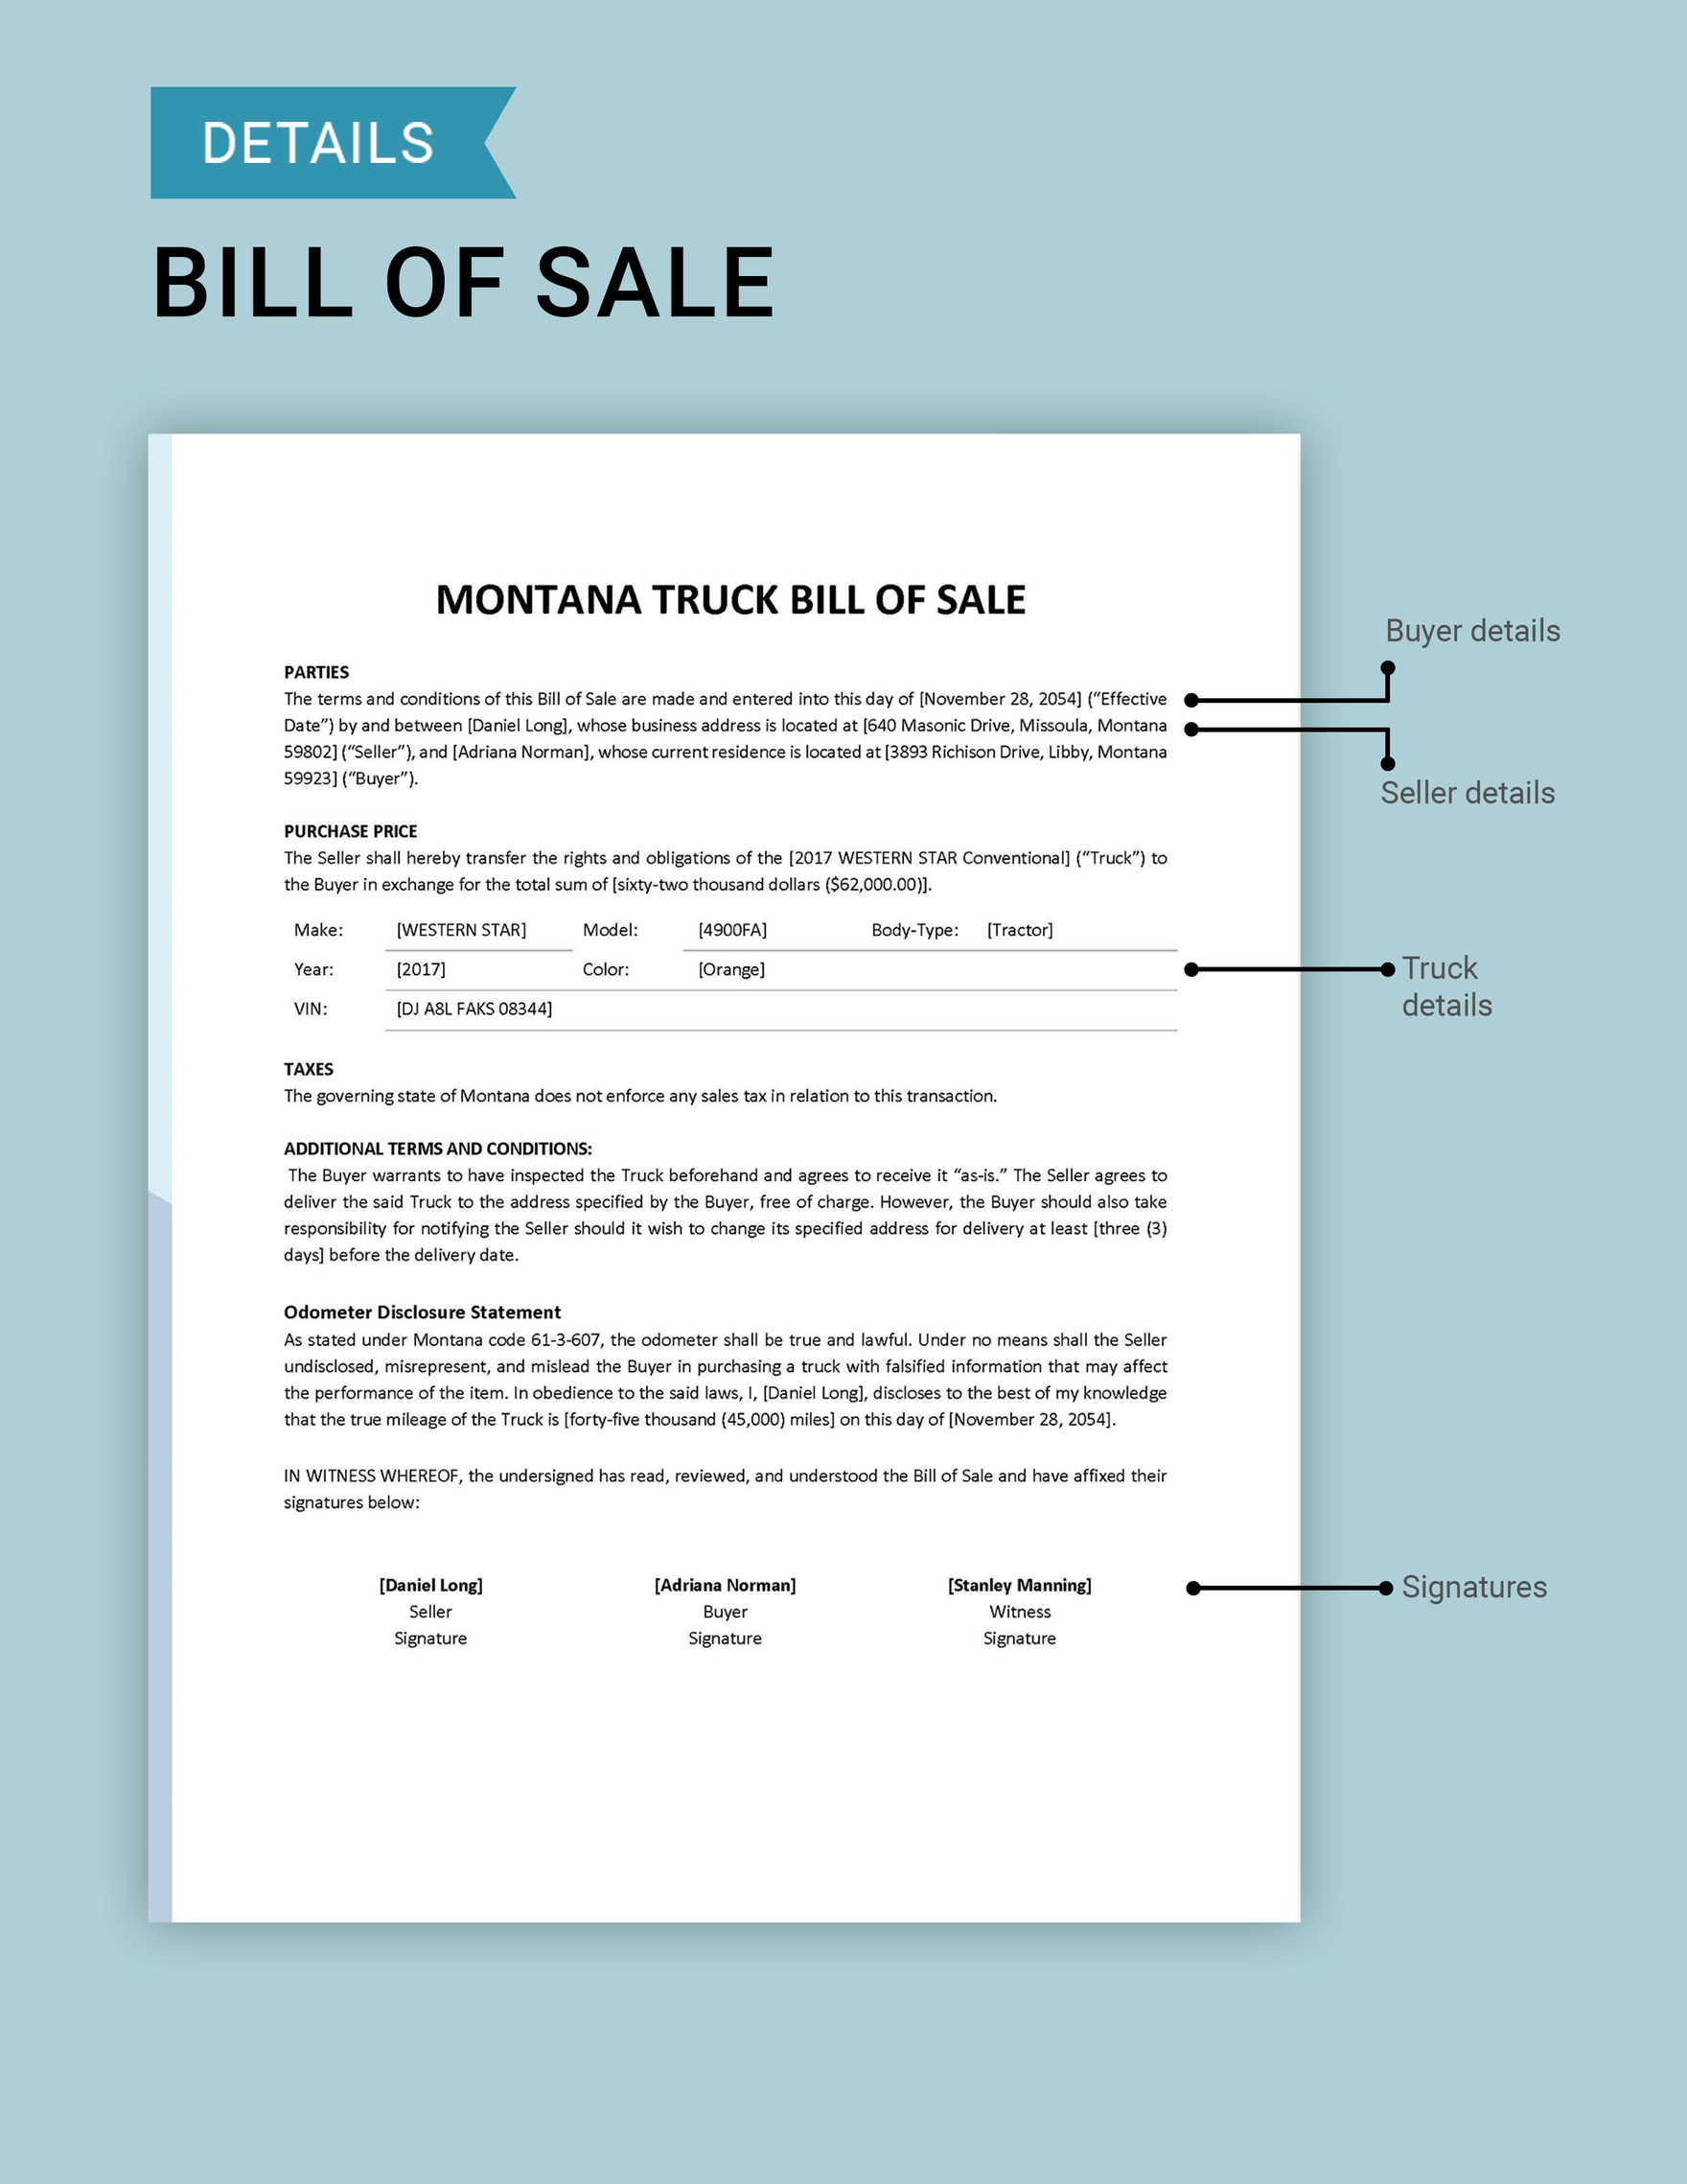 Montana Truck Bill of Sale Template